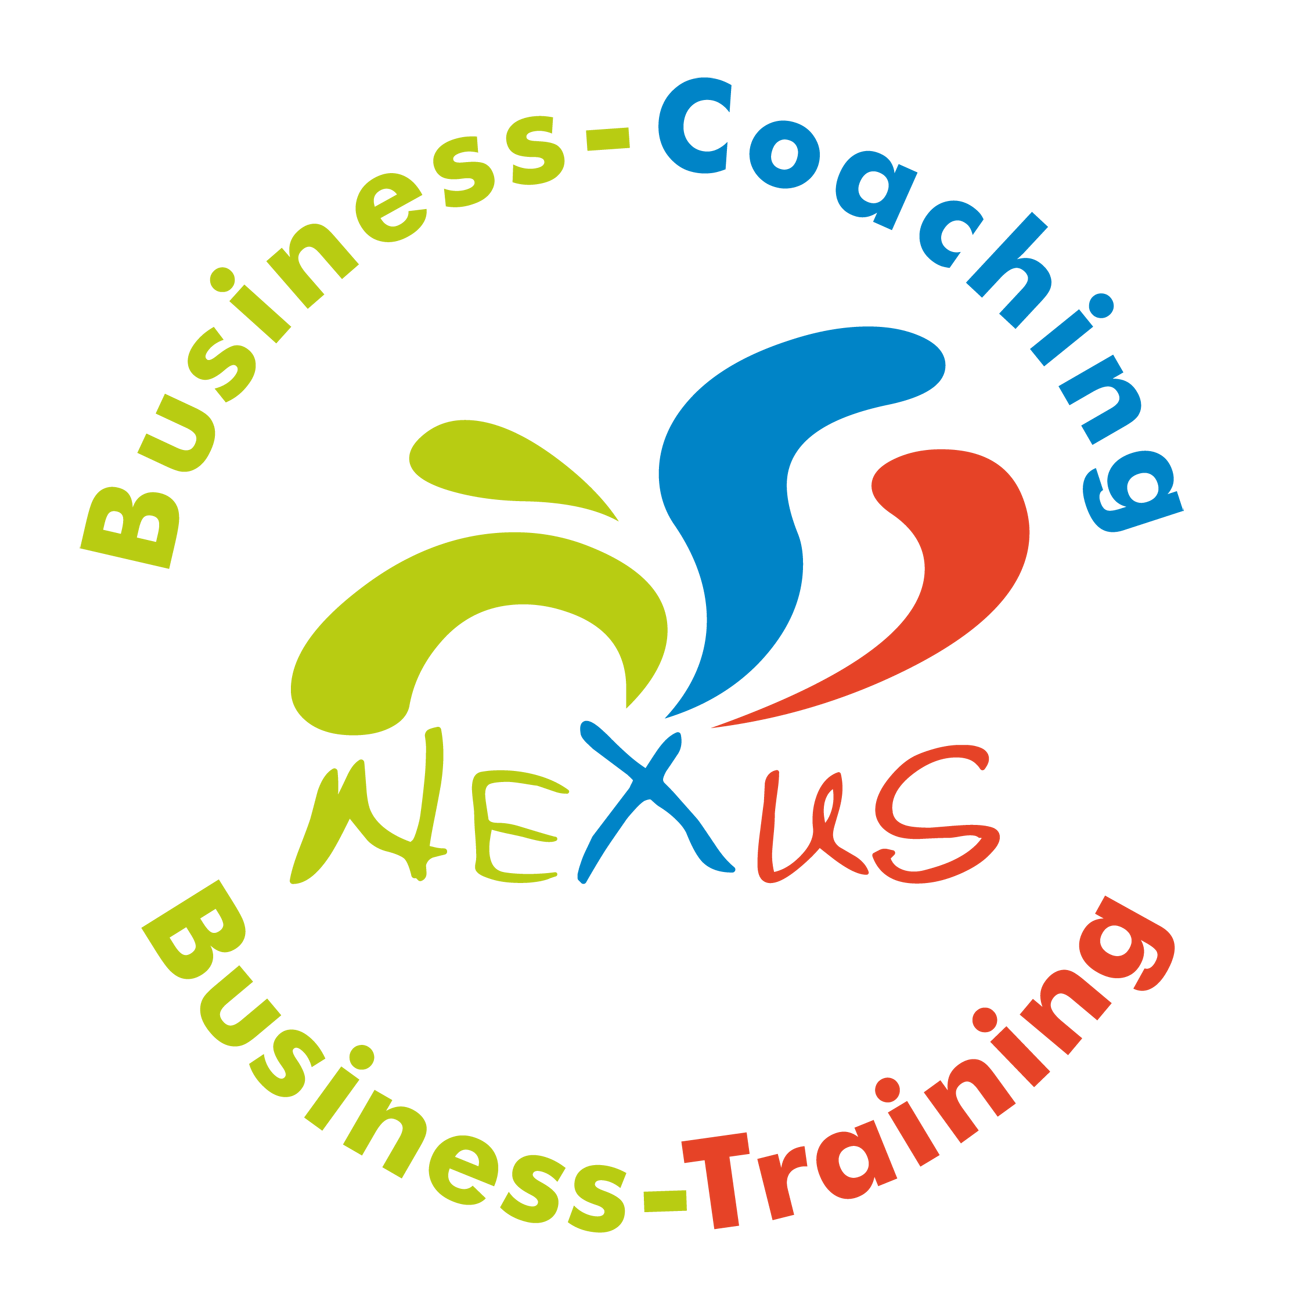 Business-Coaching Neunkirchen, Business-Einzelcoaching, Business-Training, Führungskräfte-Coaching Neunkirchen, Führungskräfte-Training, Kommunikationstraining, Persönlichkeitstraining